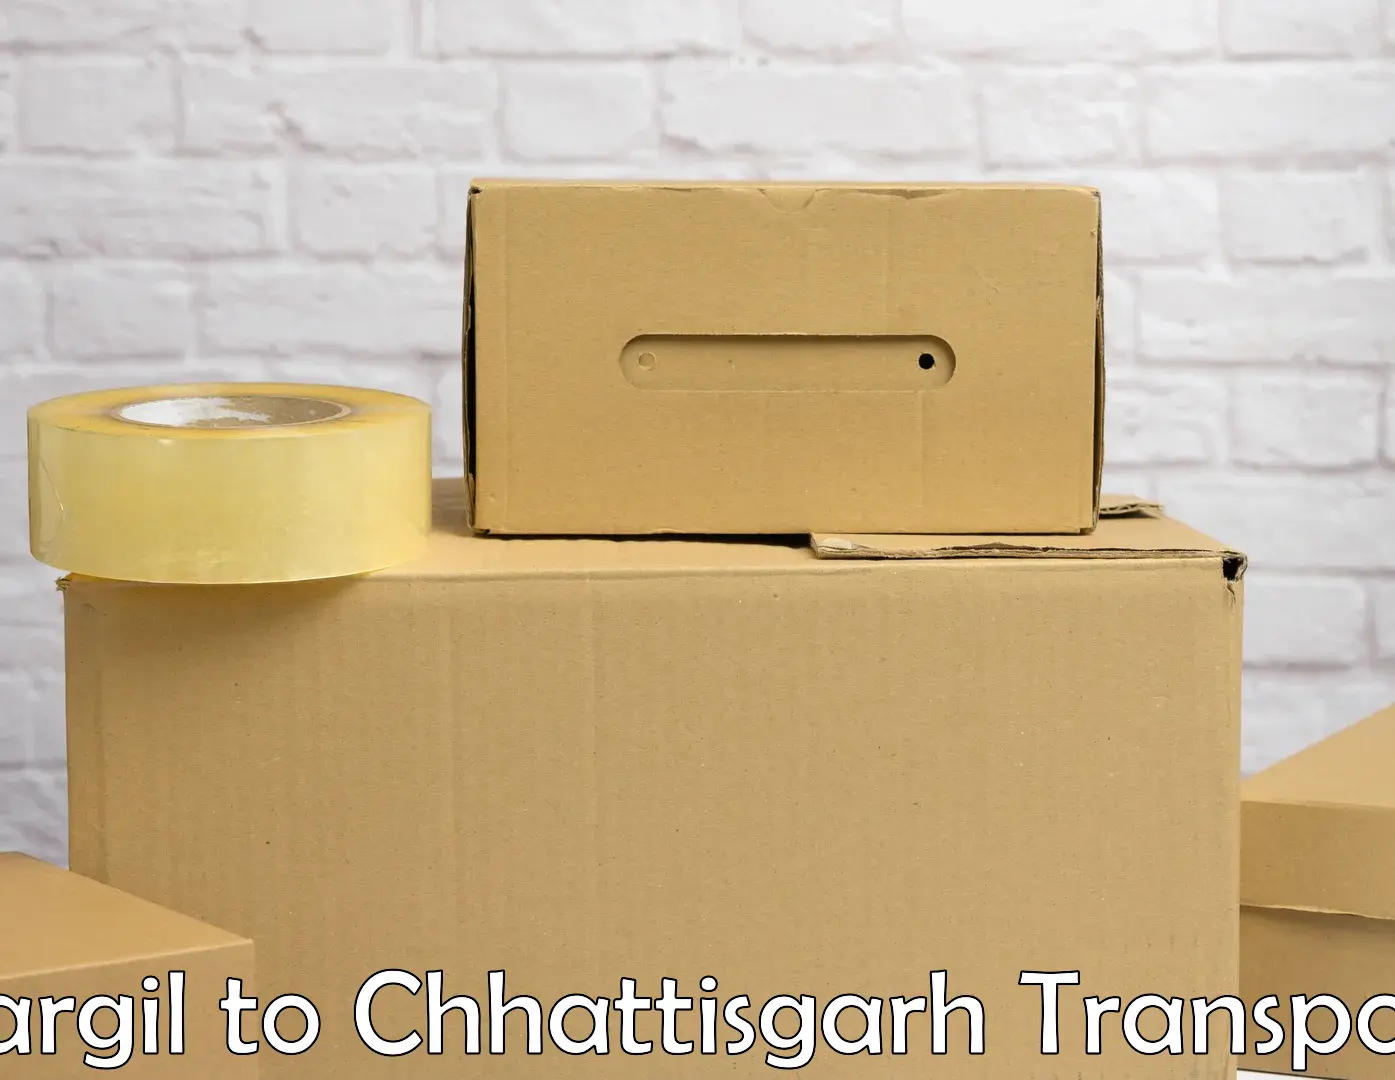 Bike shipping service Kargil to Raigarh Chhattisgarh